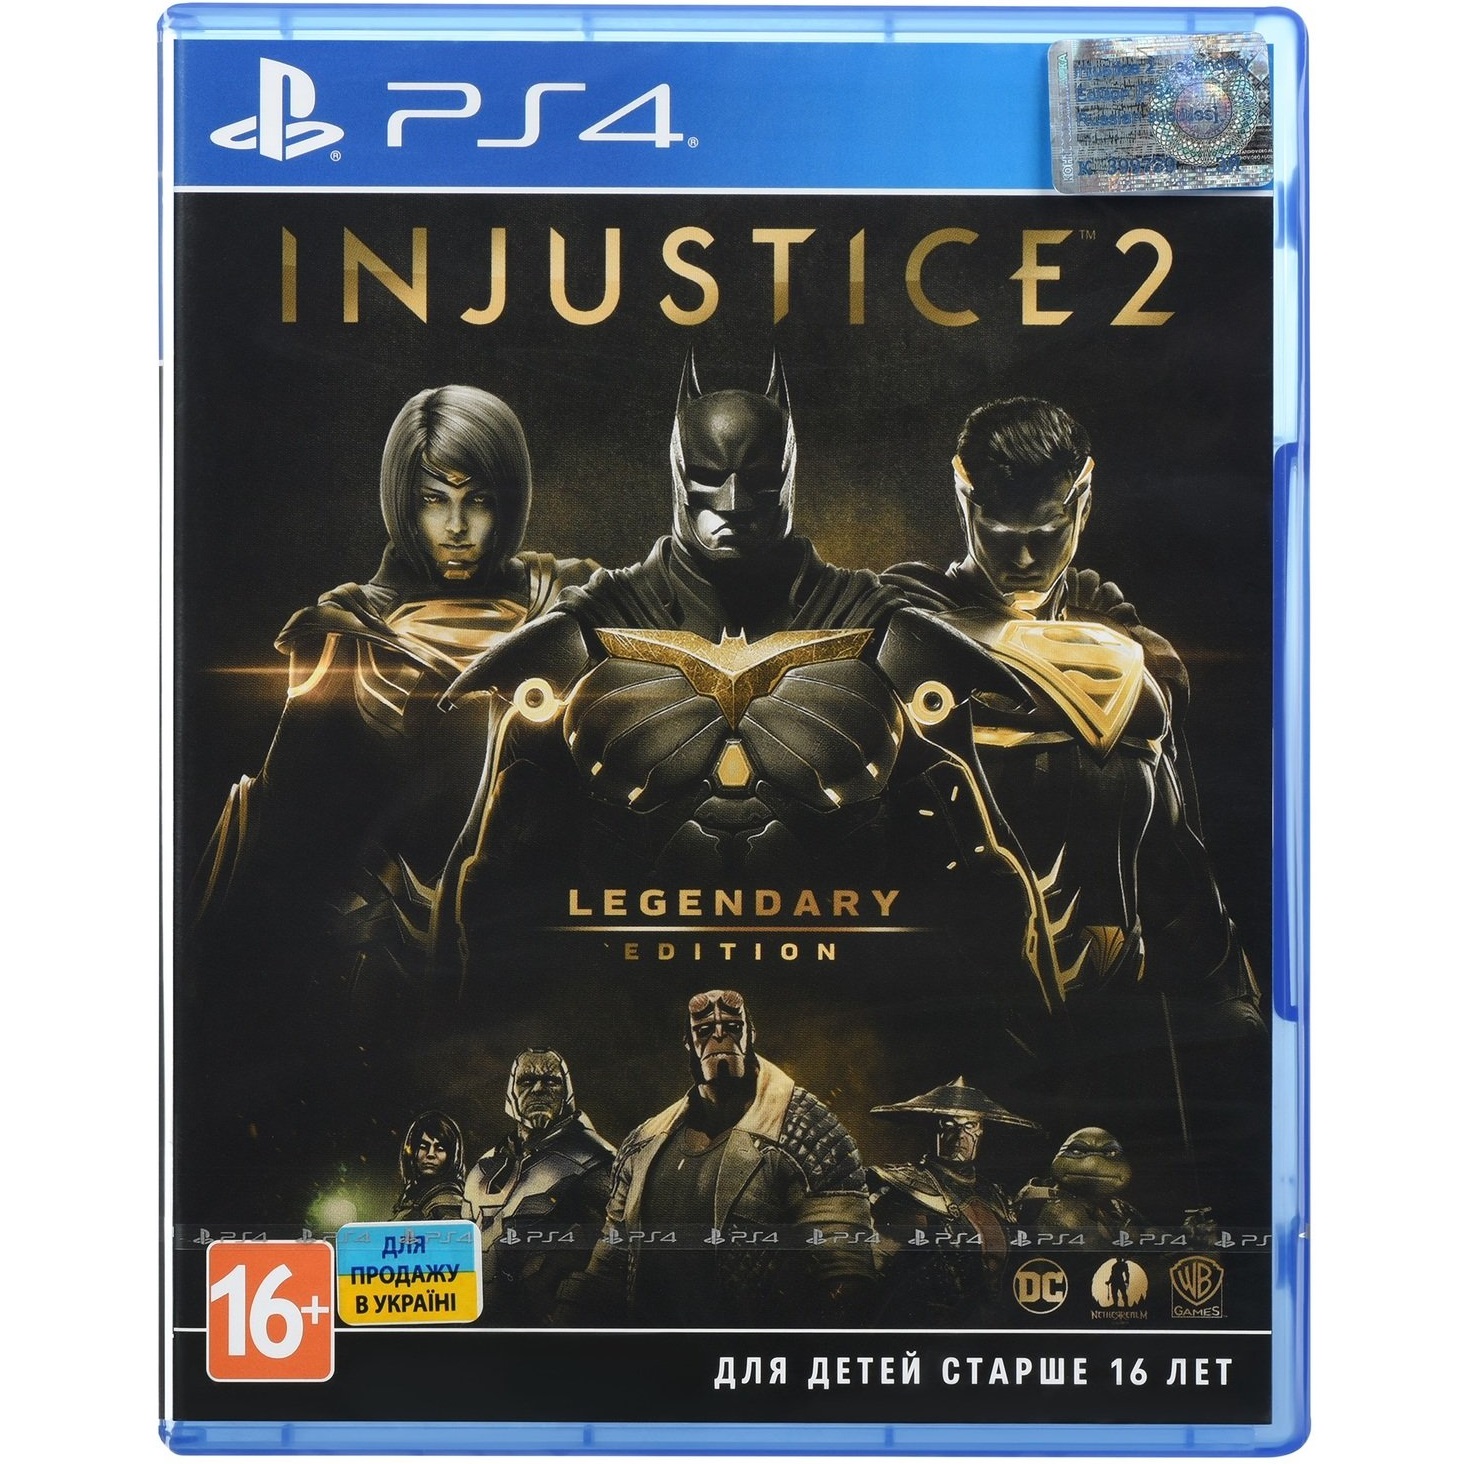 Игра для Sony PS4 Injustice 2 Legendary, русские субтитры, цвет синий